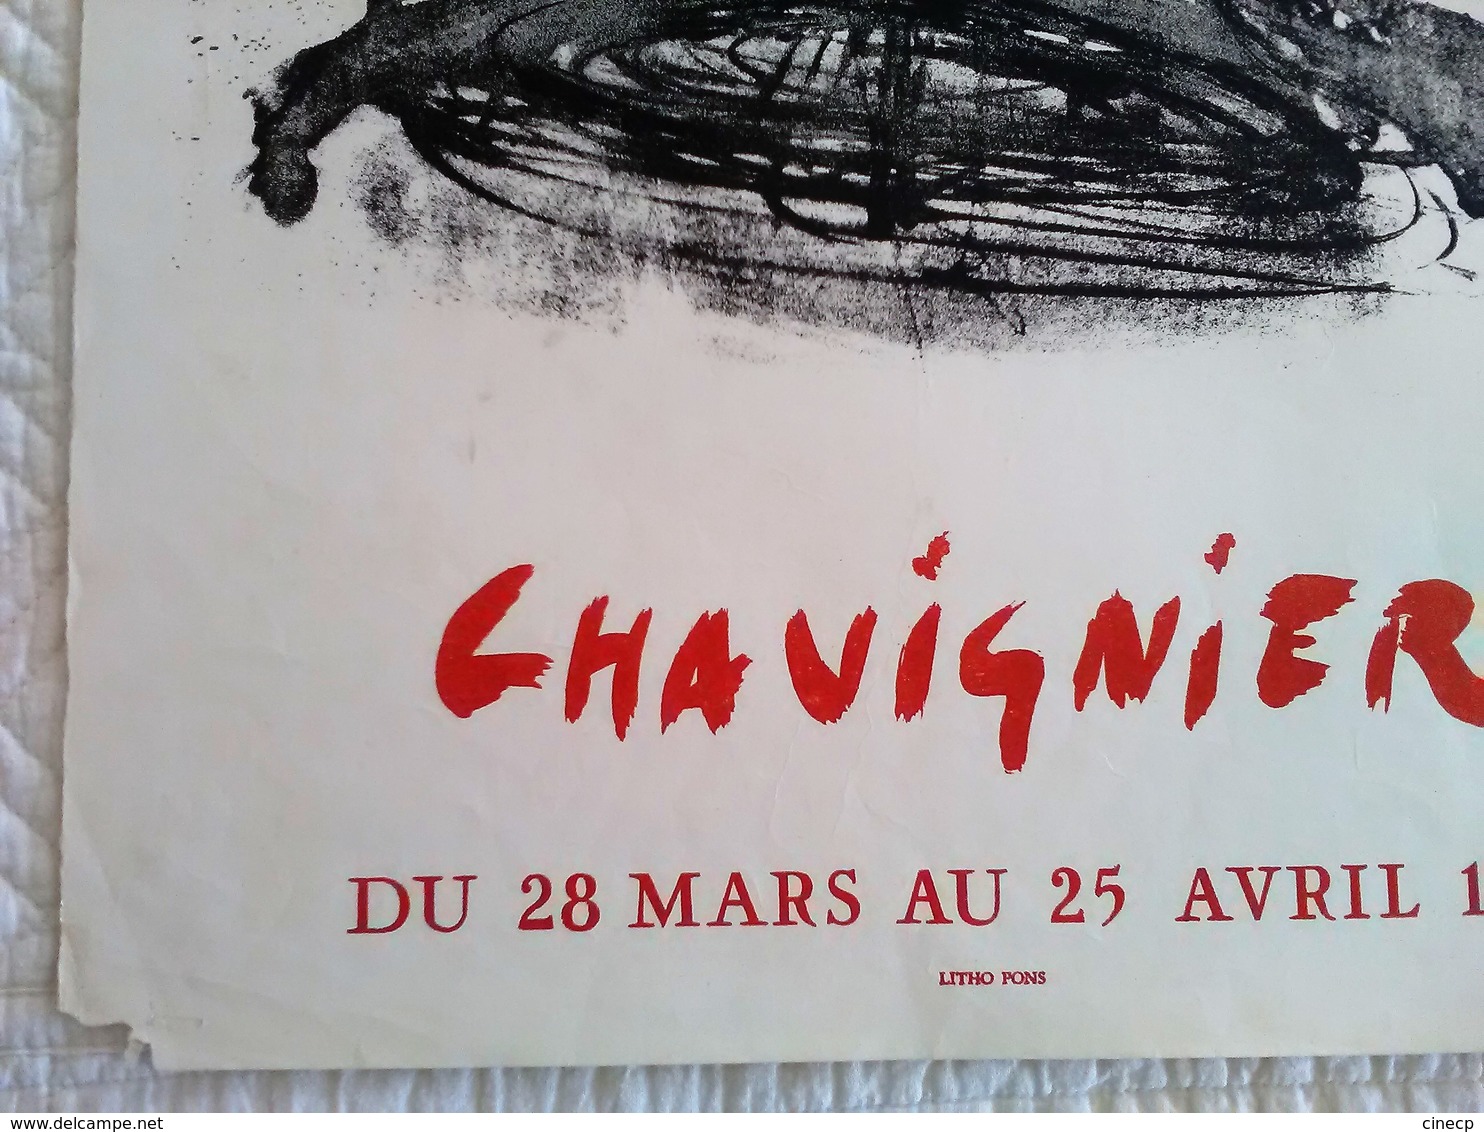 AFFICHE ANCIENNE ORIGINALE EN LITHOGRAPHIE CHAVIGNIER GALERIE CAVALERO CANNES 1964 Imprimeur LITHO PONS - Affiches